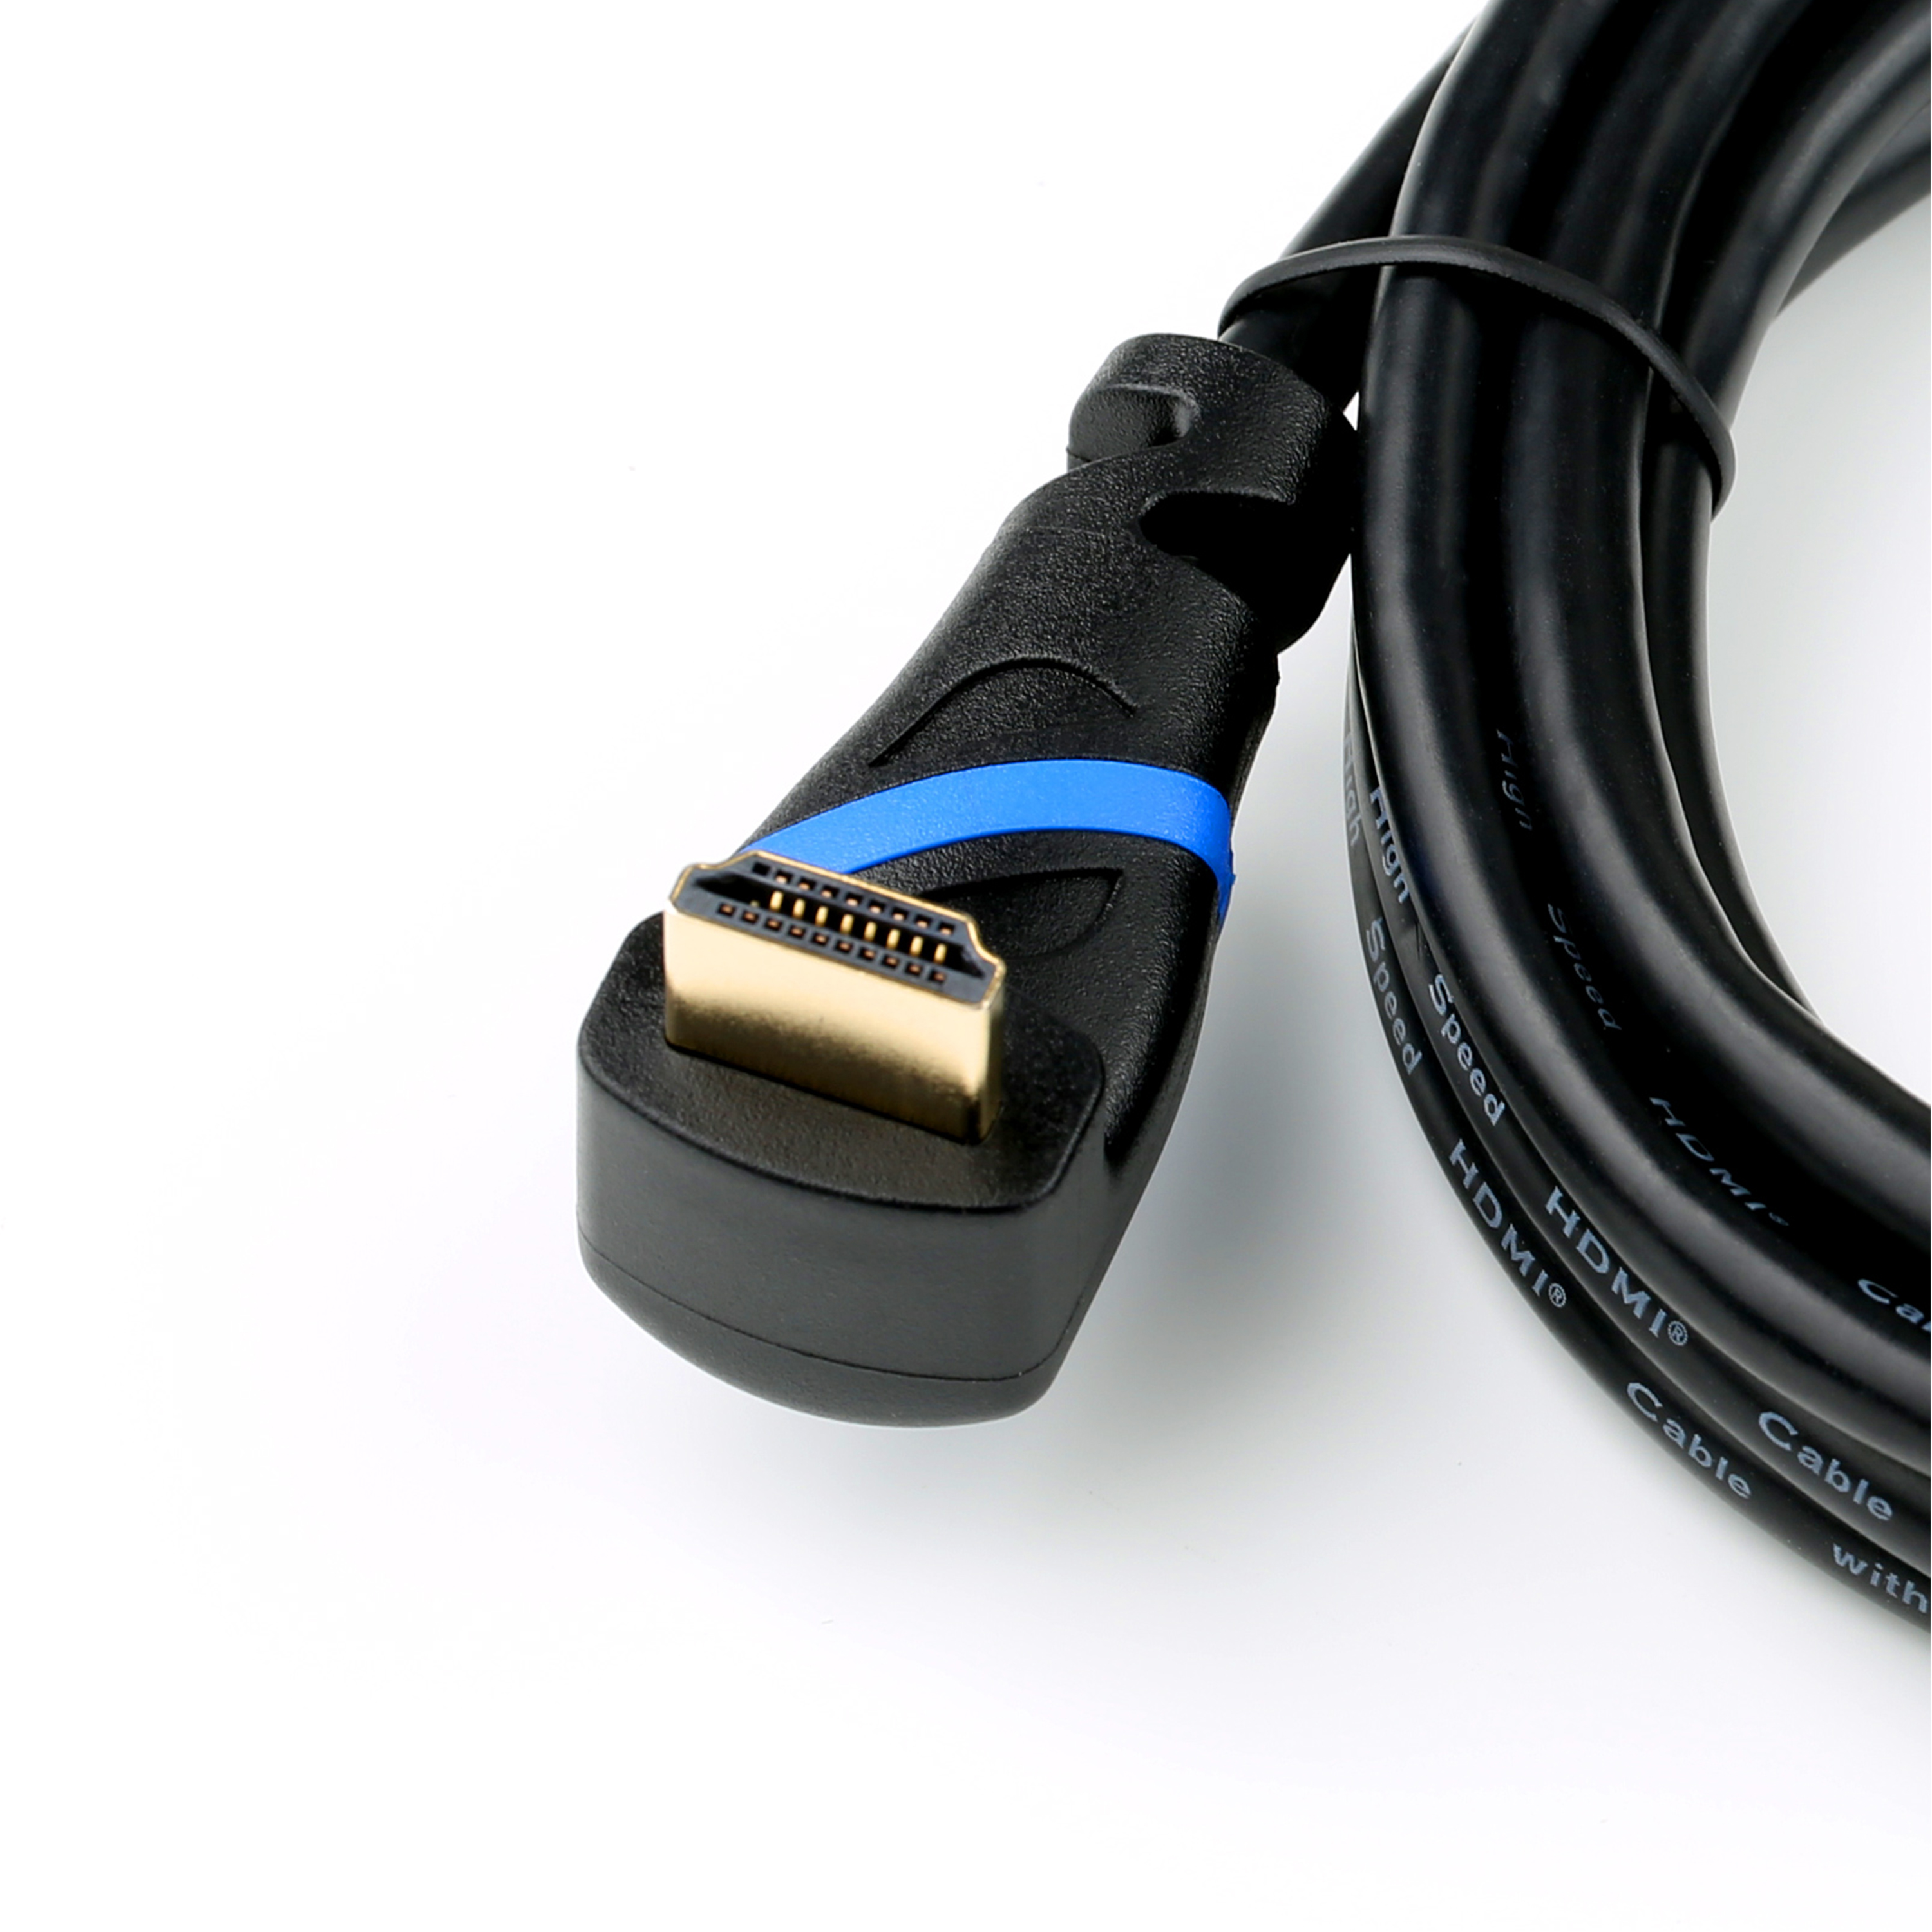 HDMI 2.0 m Kabel, gewinkelt, schwarz/blau 3 HDMI CSL Kabel,